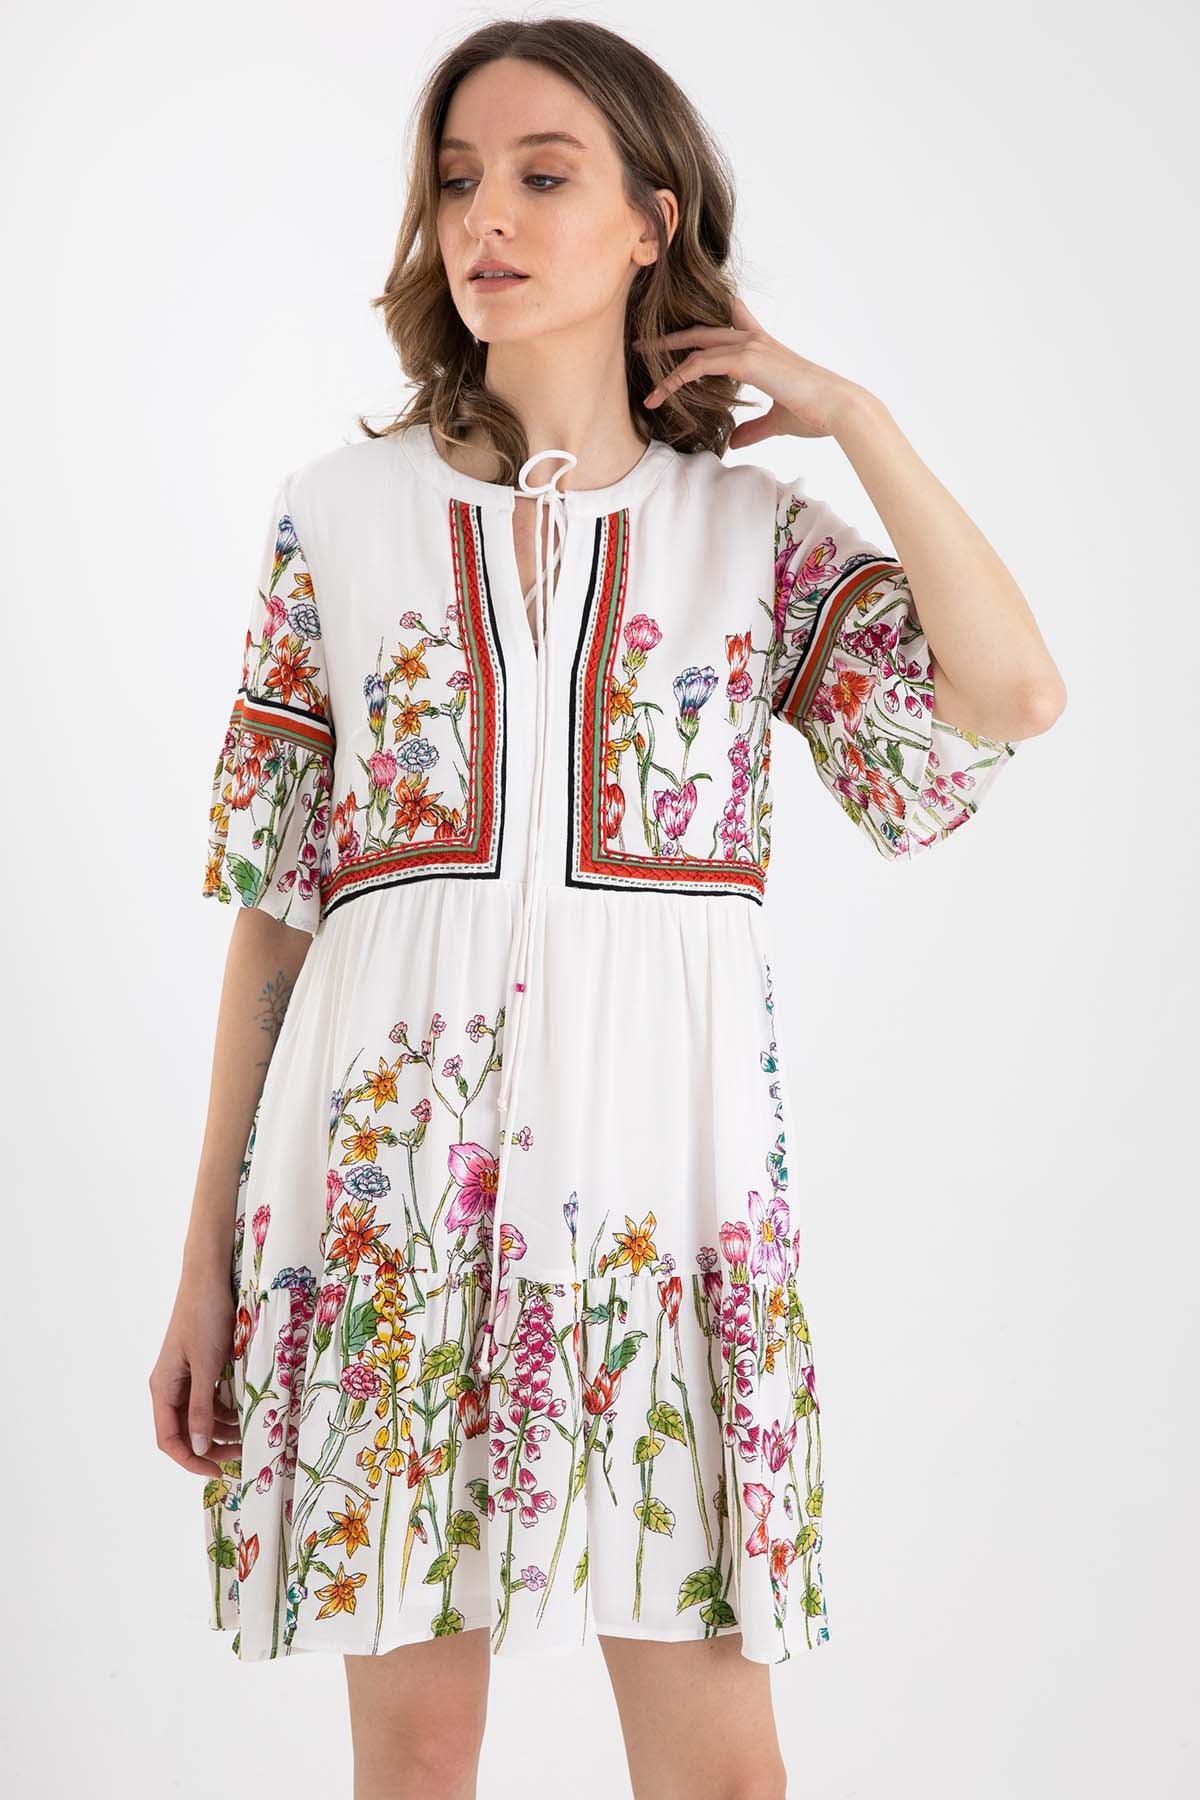 Rene Derhy Çiçek Desenli Diz Üstü Elbise-Libas Trendy Fashion Store